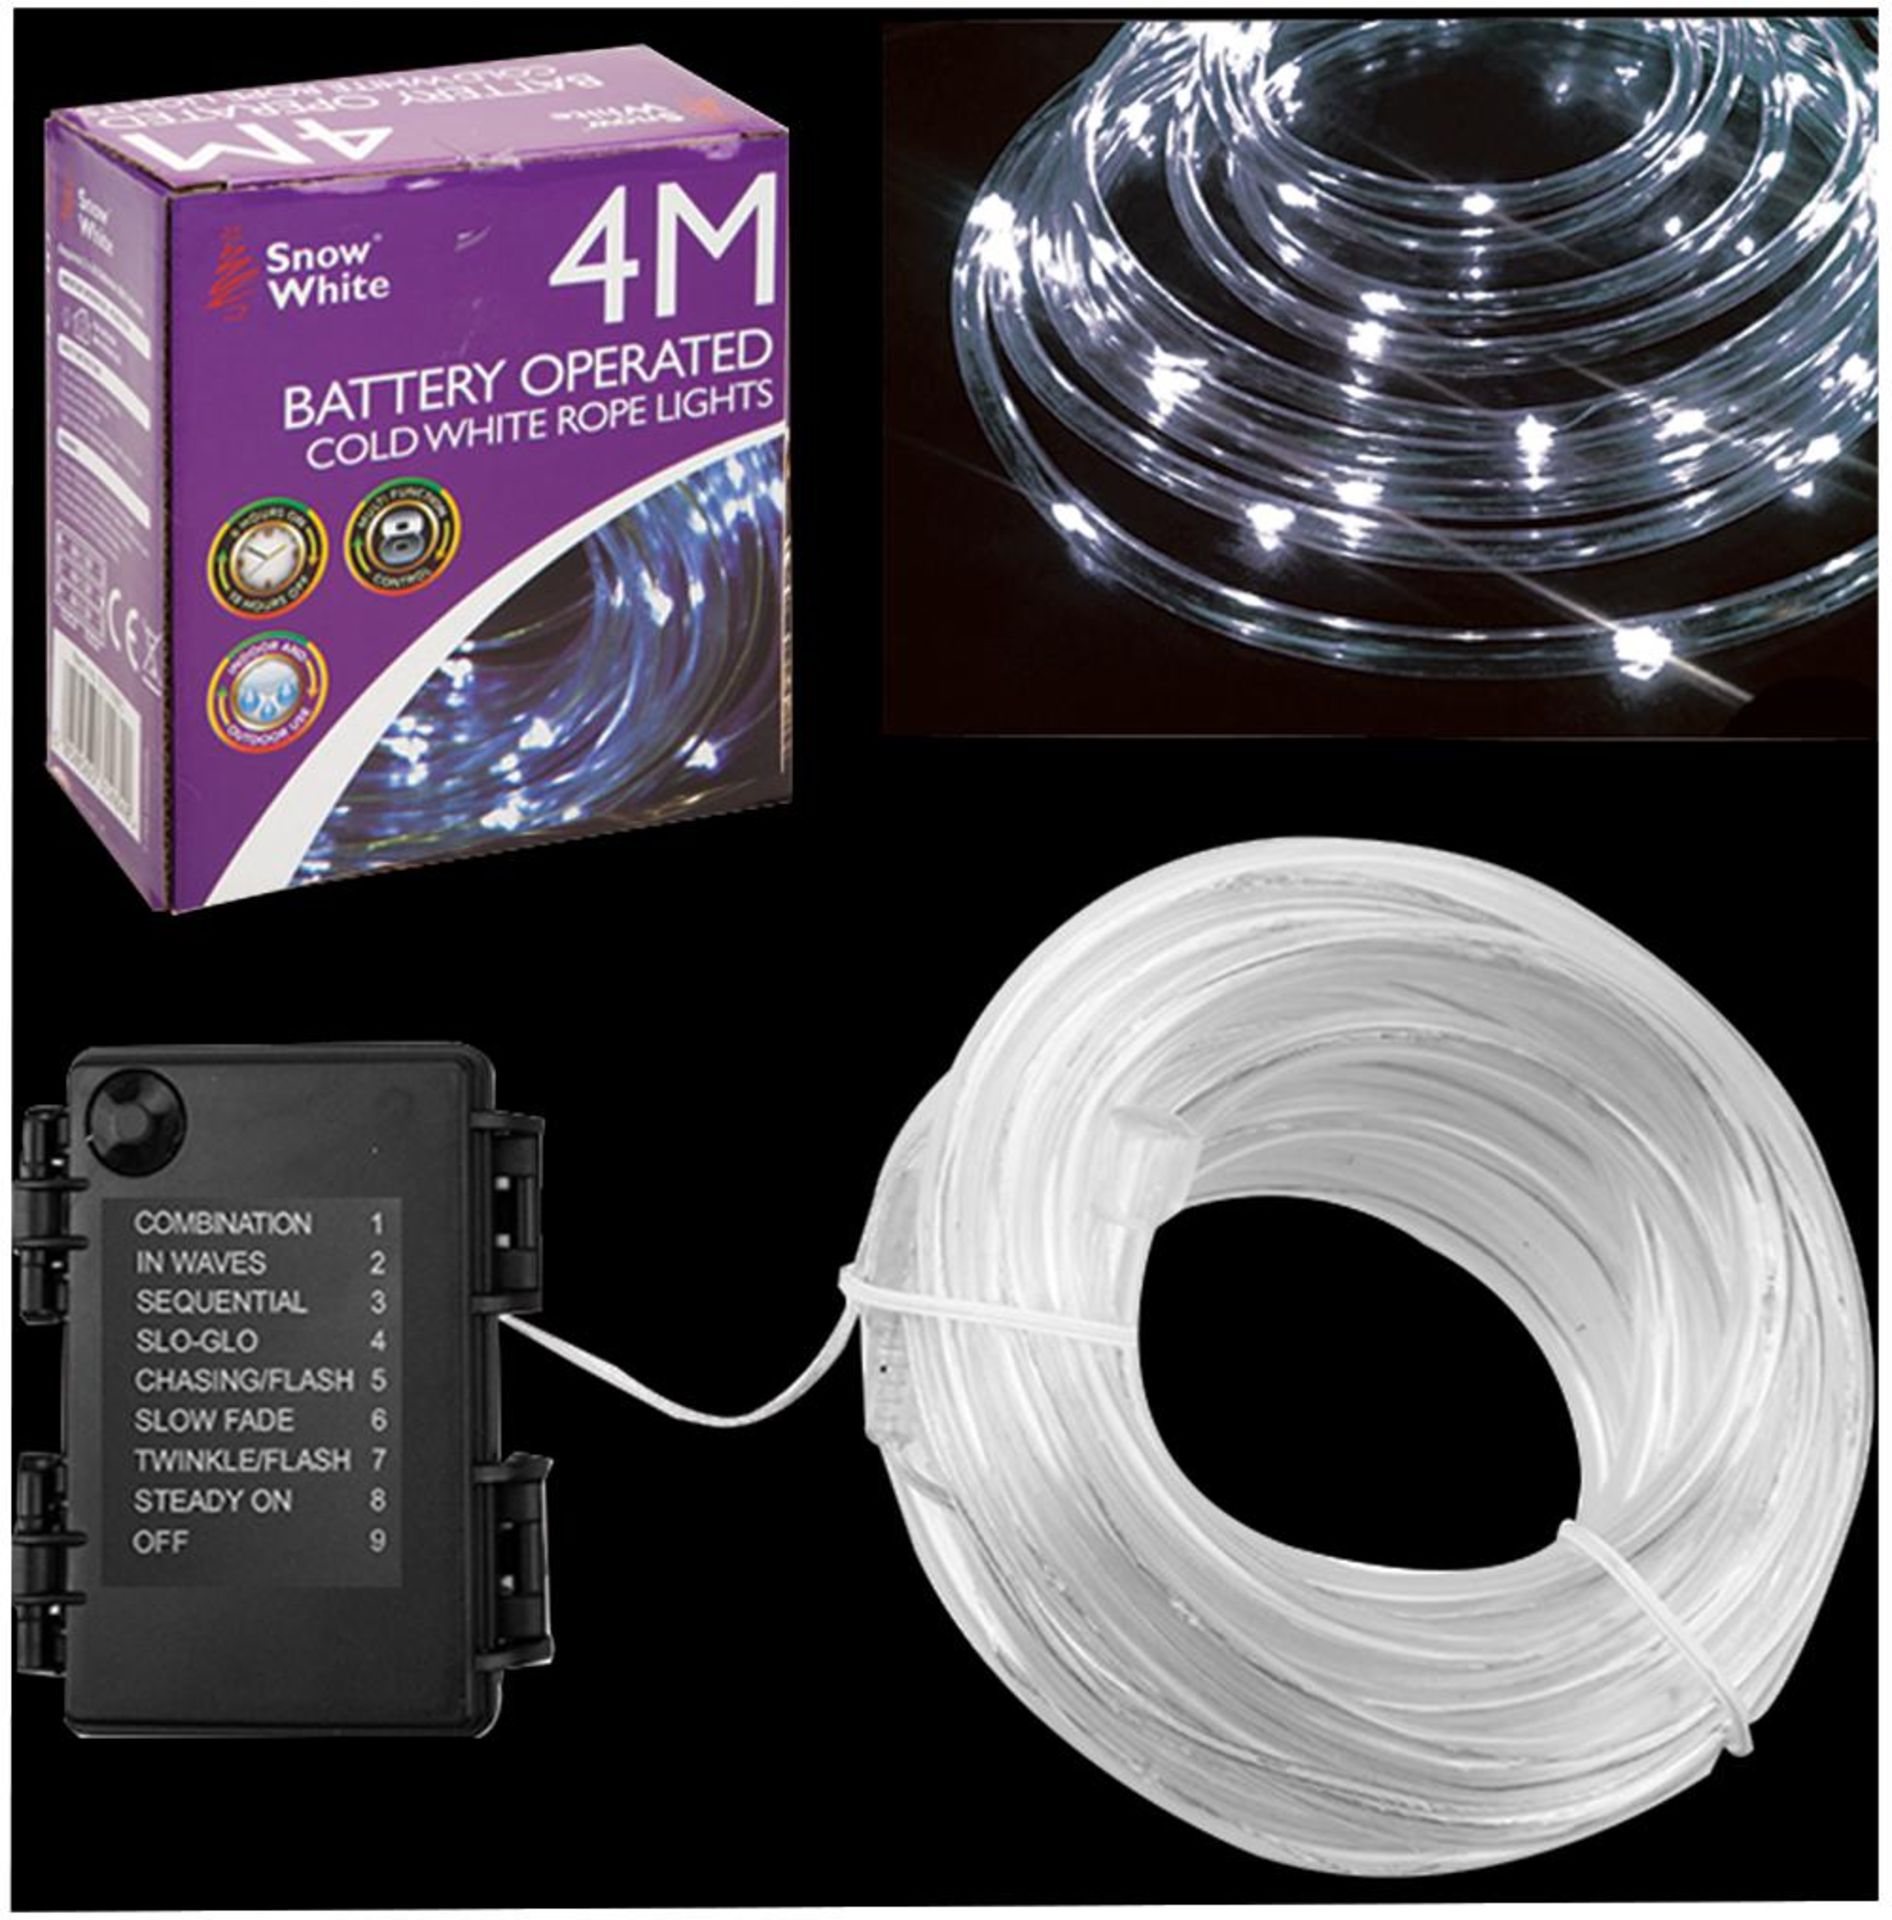 V Brand New 4M 40 LED Multi Function Rope Light - Cold White